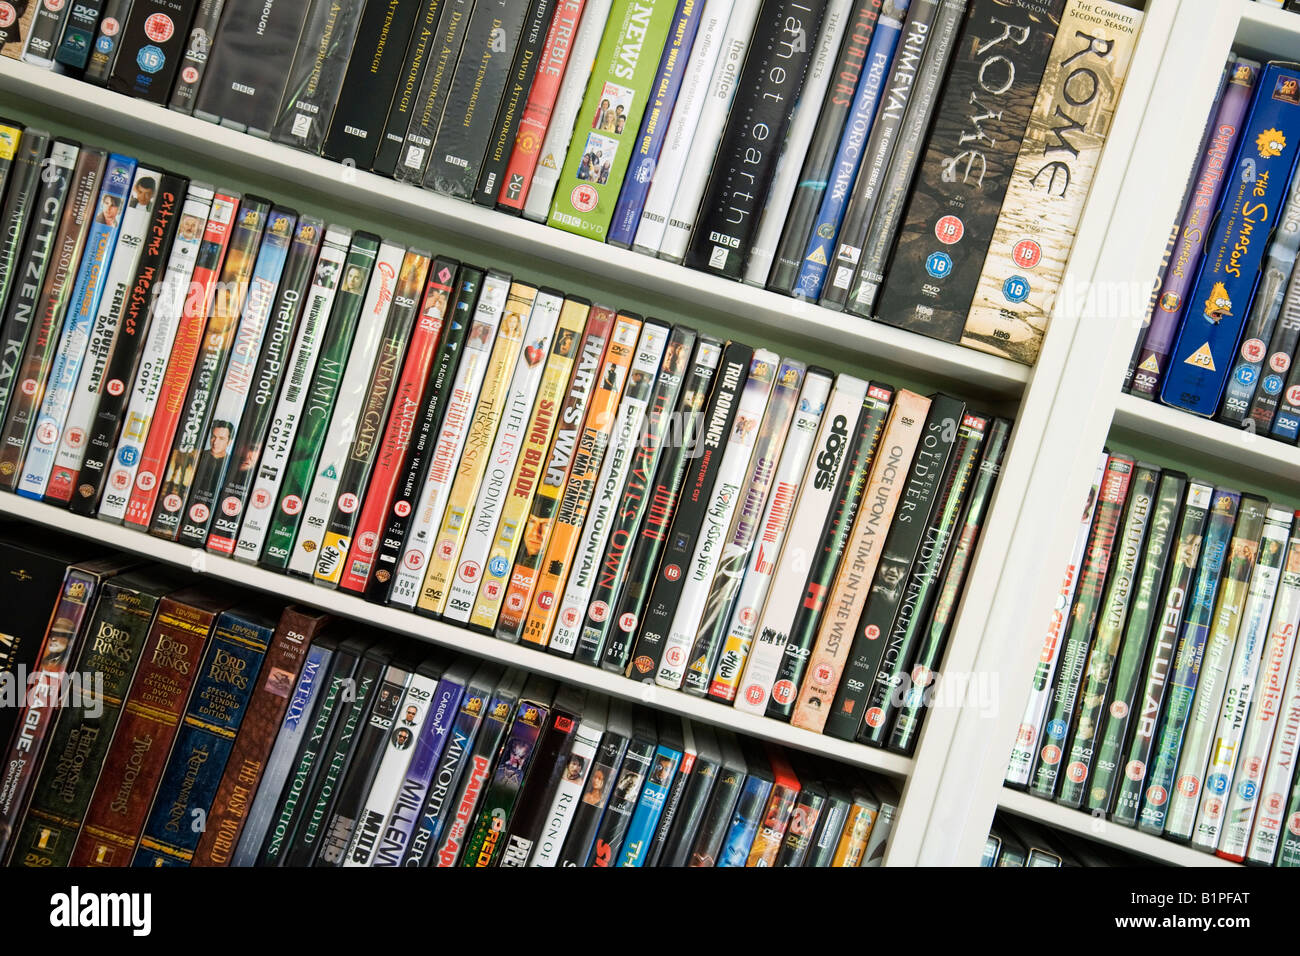 House shelves full of DVD DVDs films UK Stock Photo - Alamy